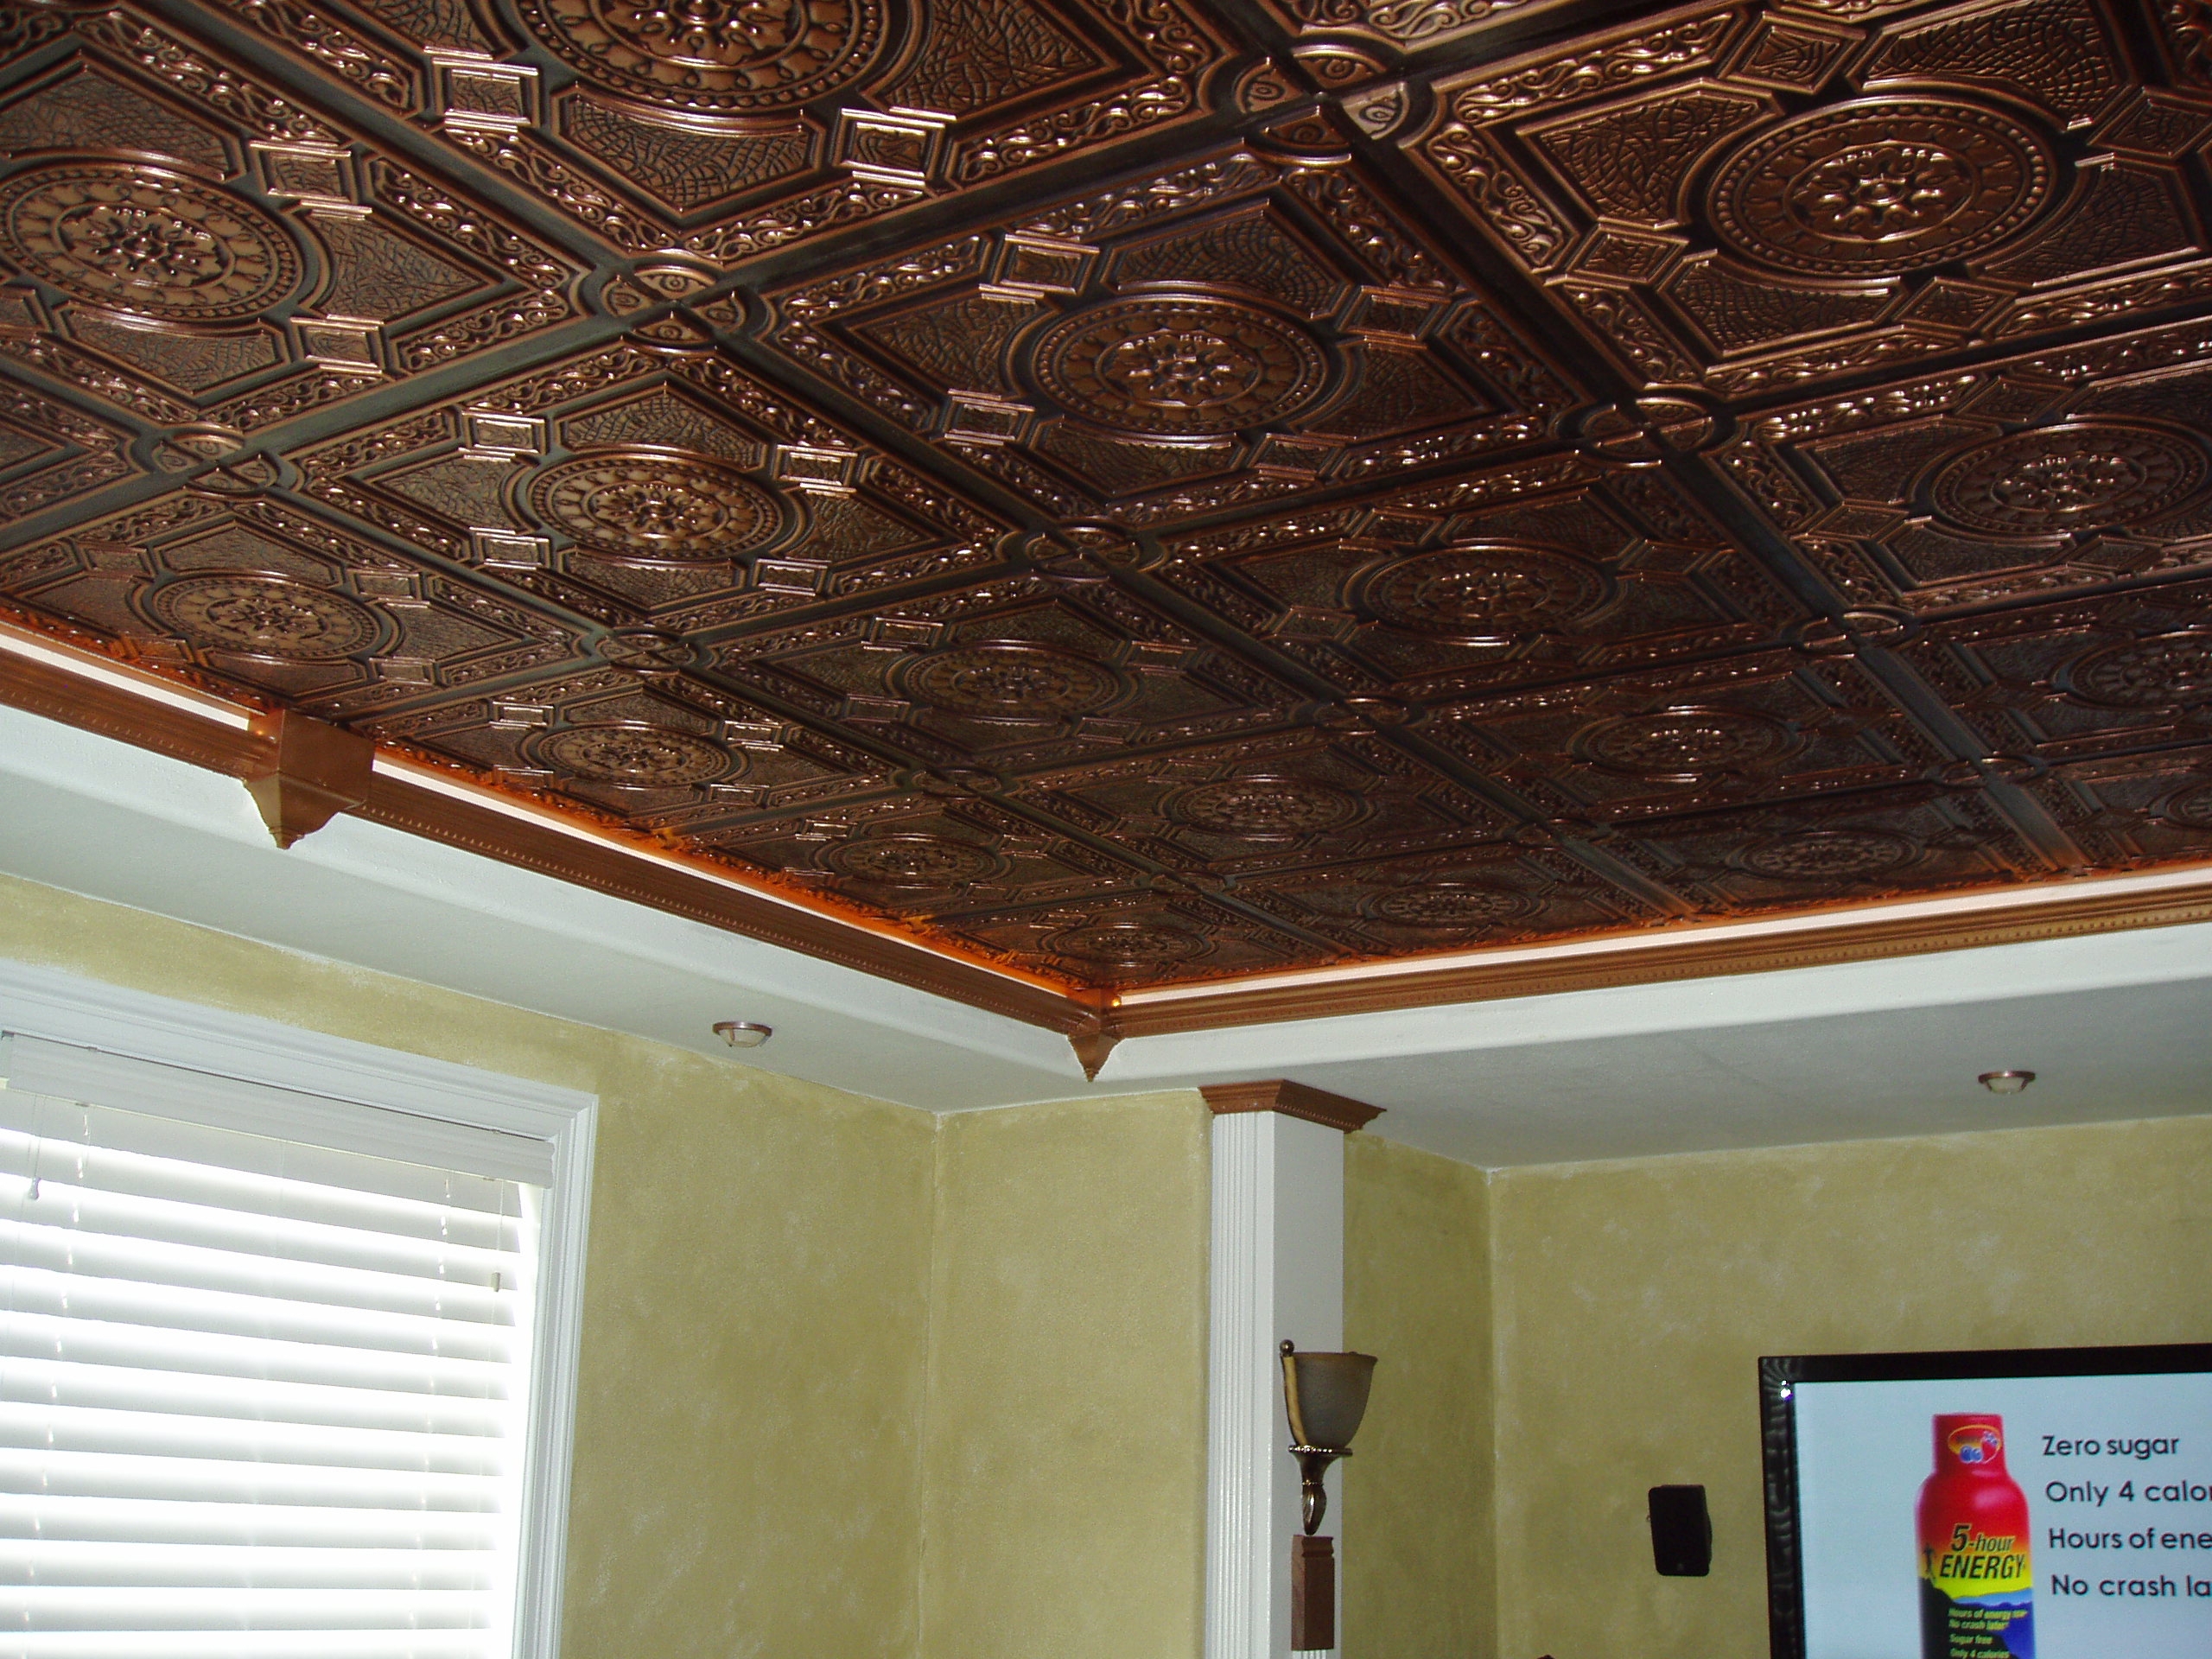 Copper Ceiling Tiles Bathroom Copper Ceiling Tiles Bathroom copper ceiling tiles bathroom ceiling tiles 2560 X 1920